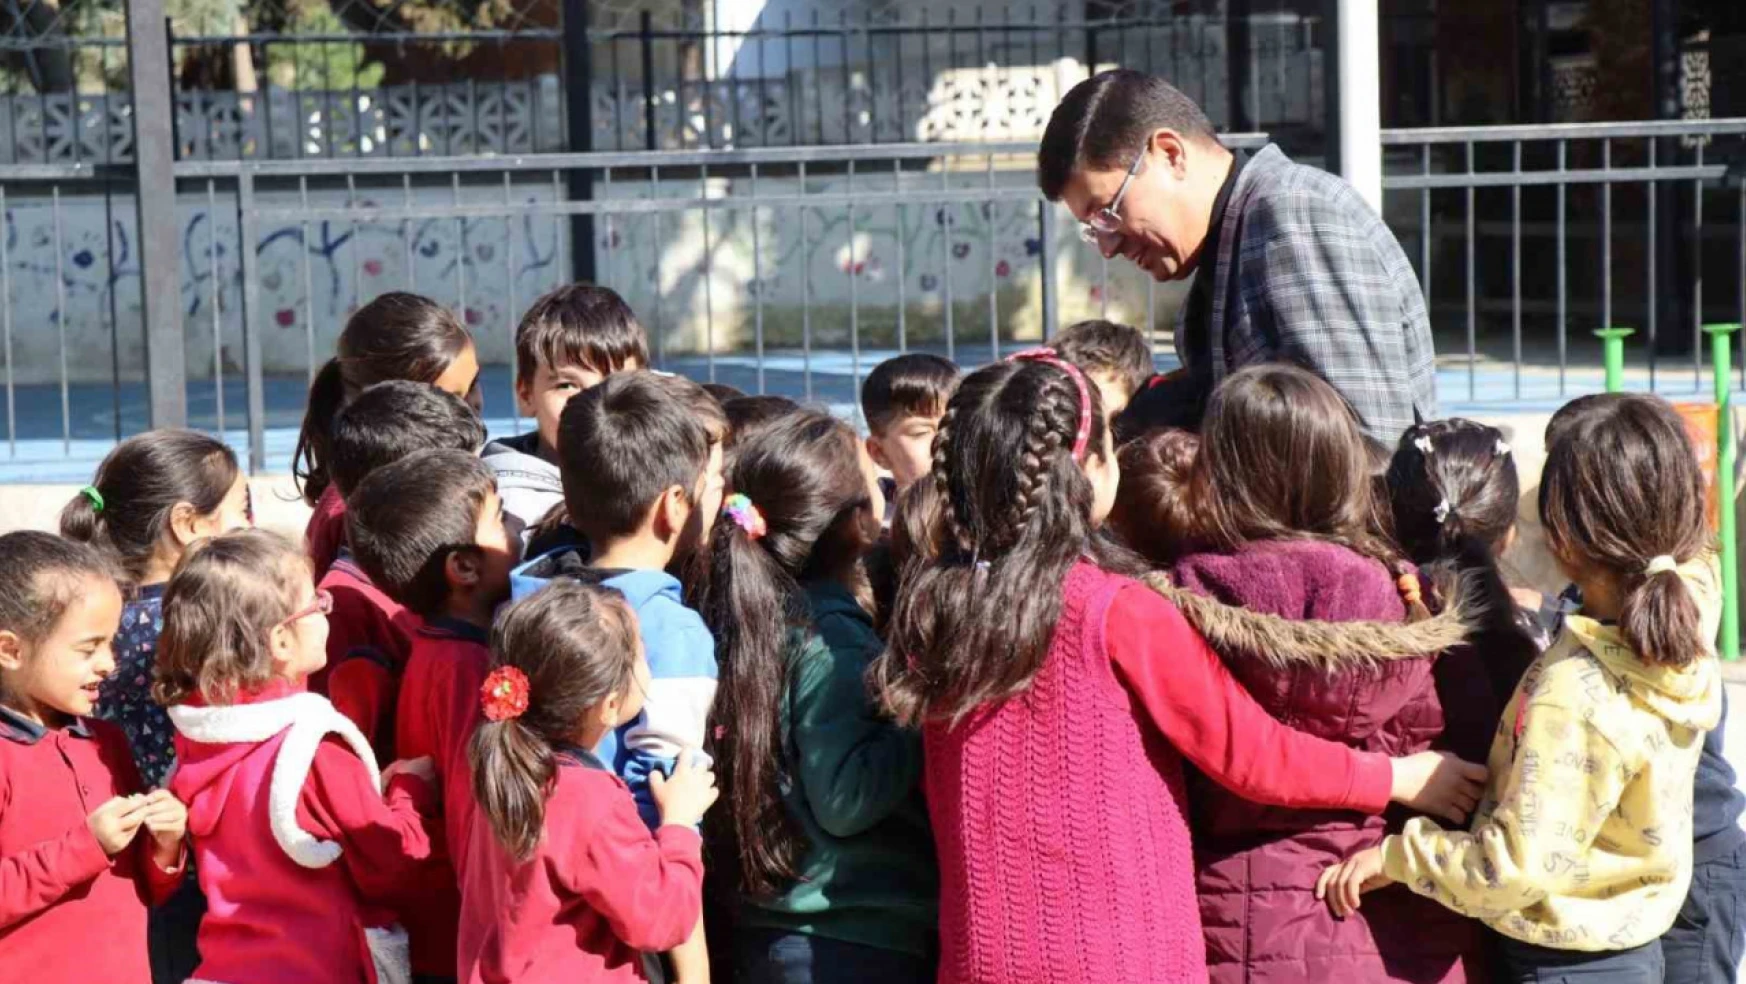 Başkan Özcan'dan öğrencilere sömestr hediyesi